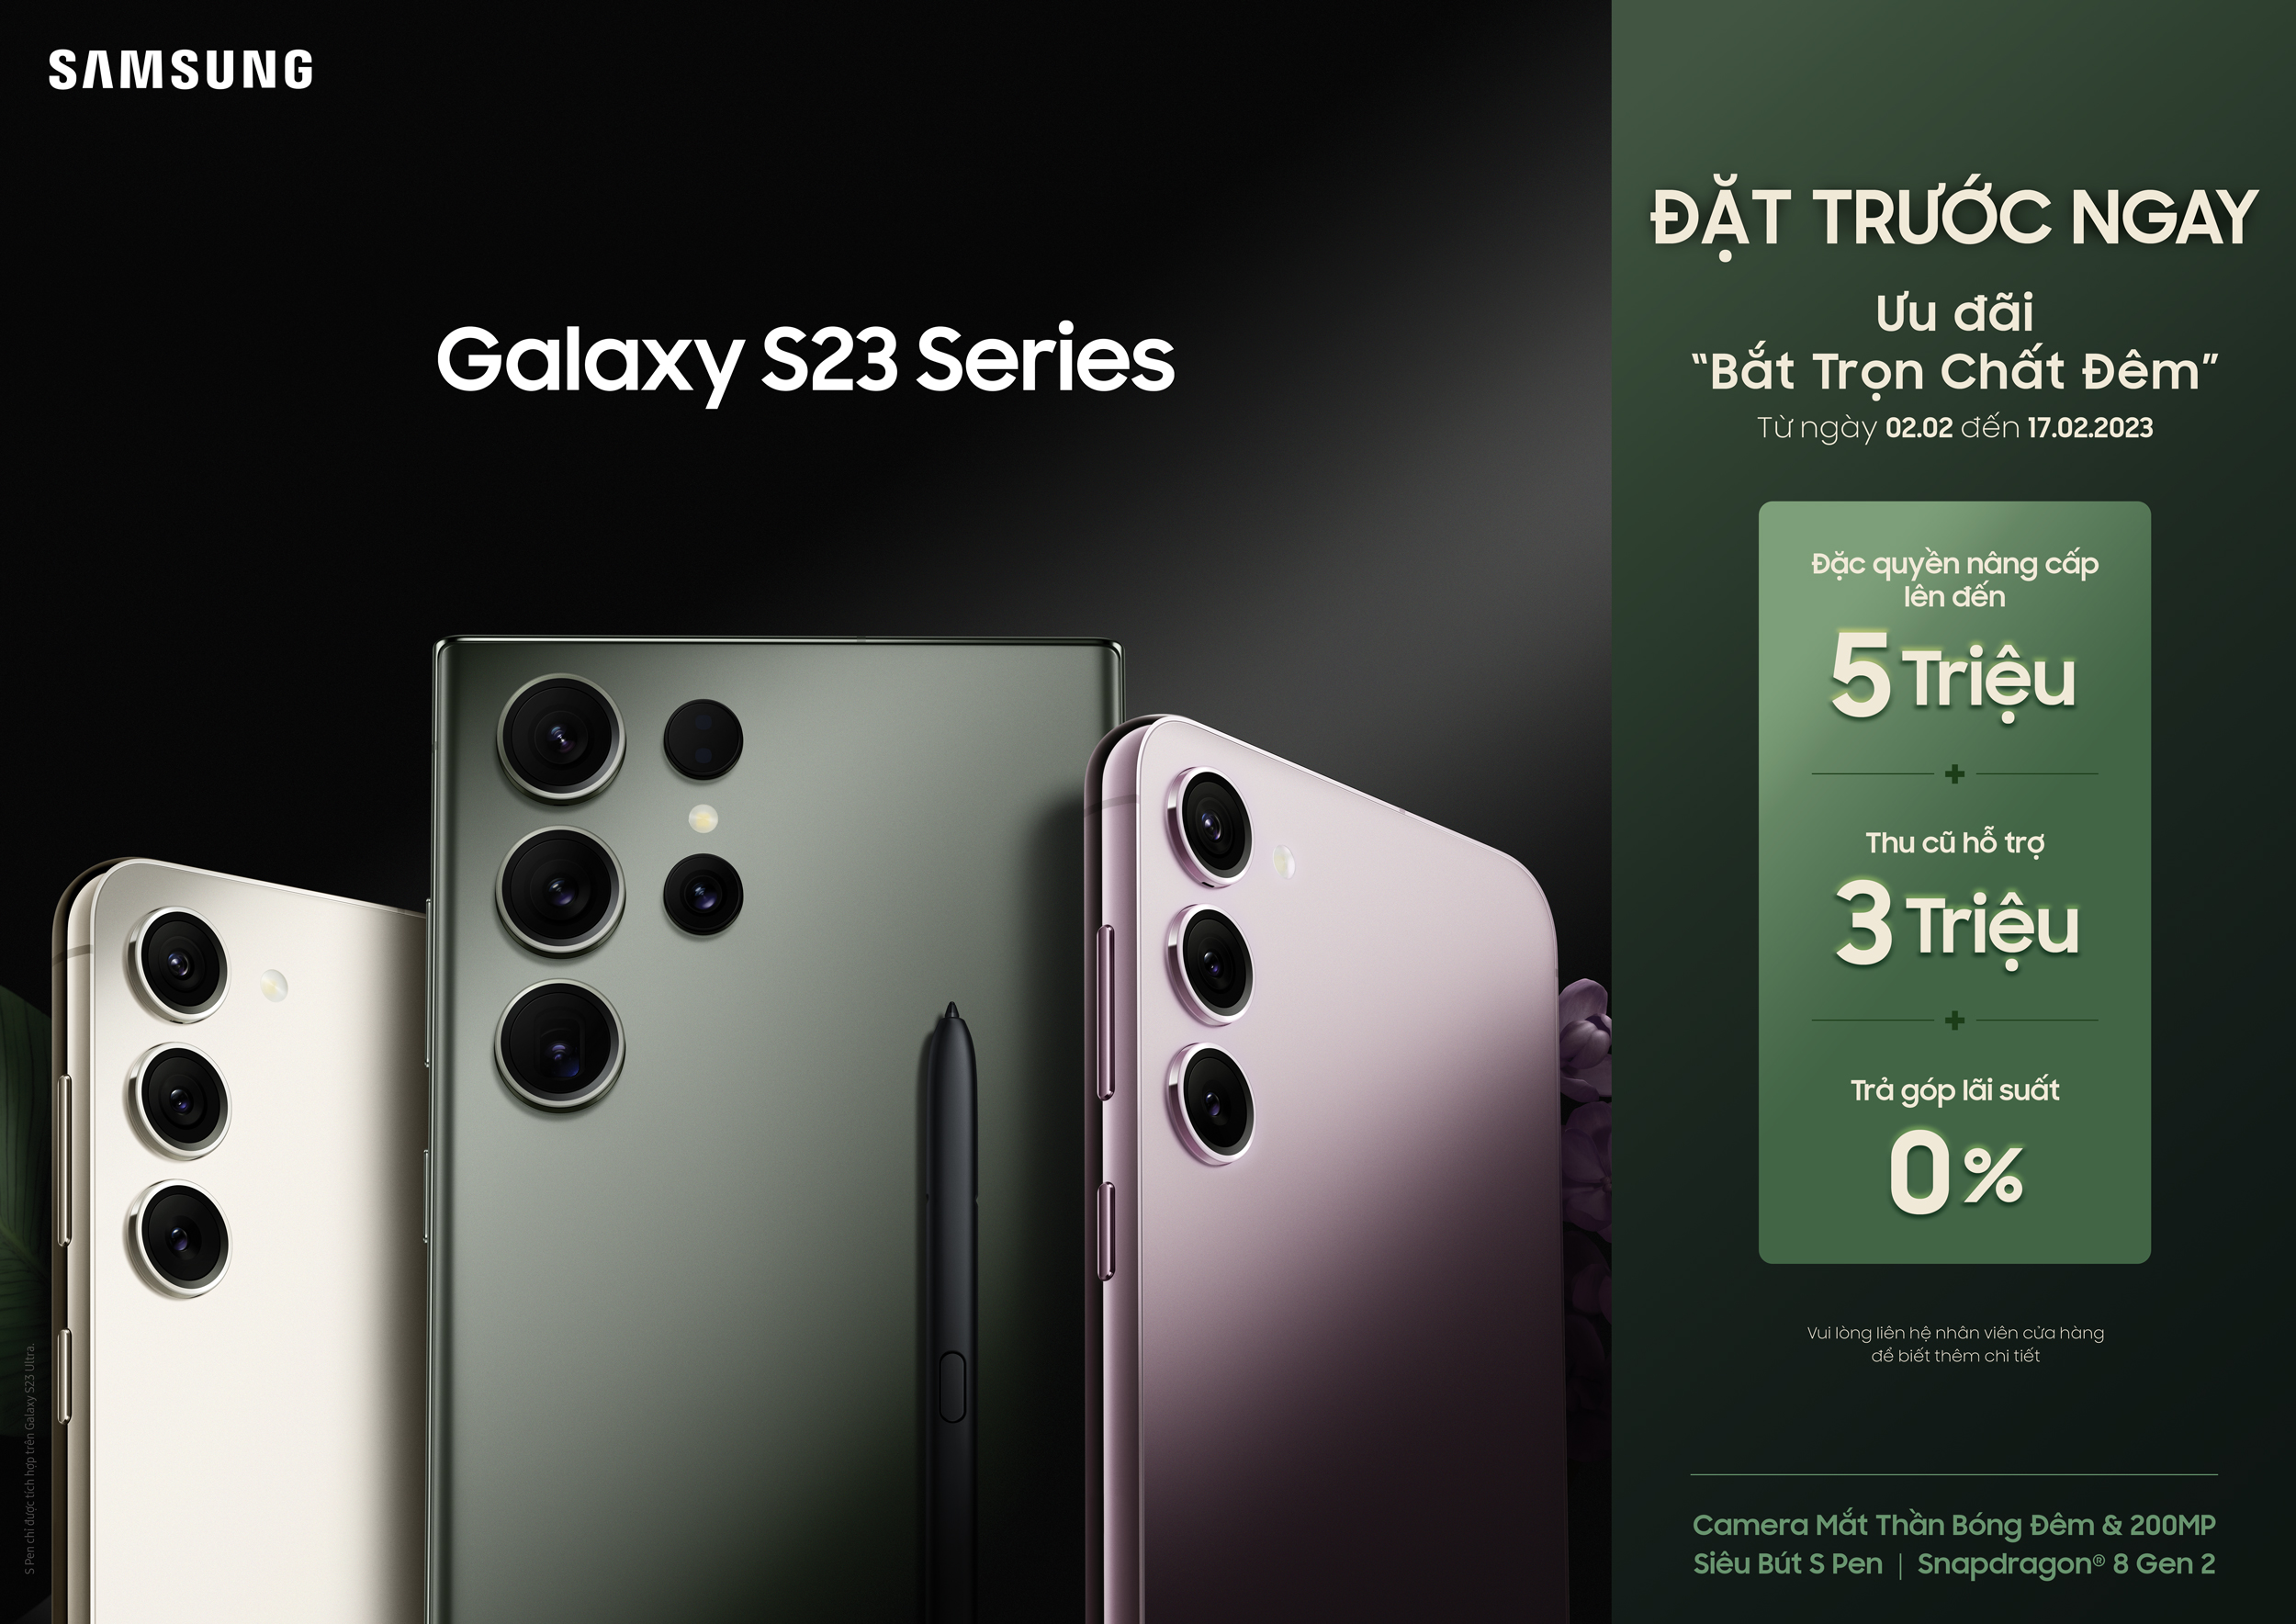 Vươn tầm sáng tạo với Galaxy S23 Series mới: Thiết kế trải nghiệm cao cấp cho hiện tại và tương lai